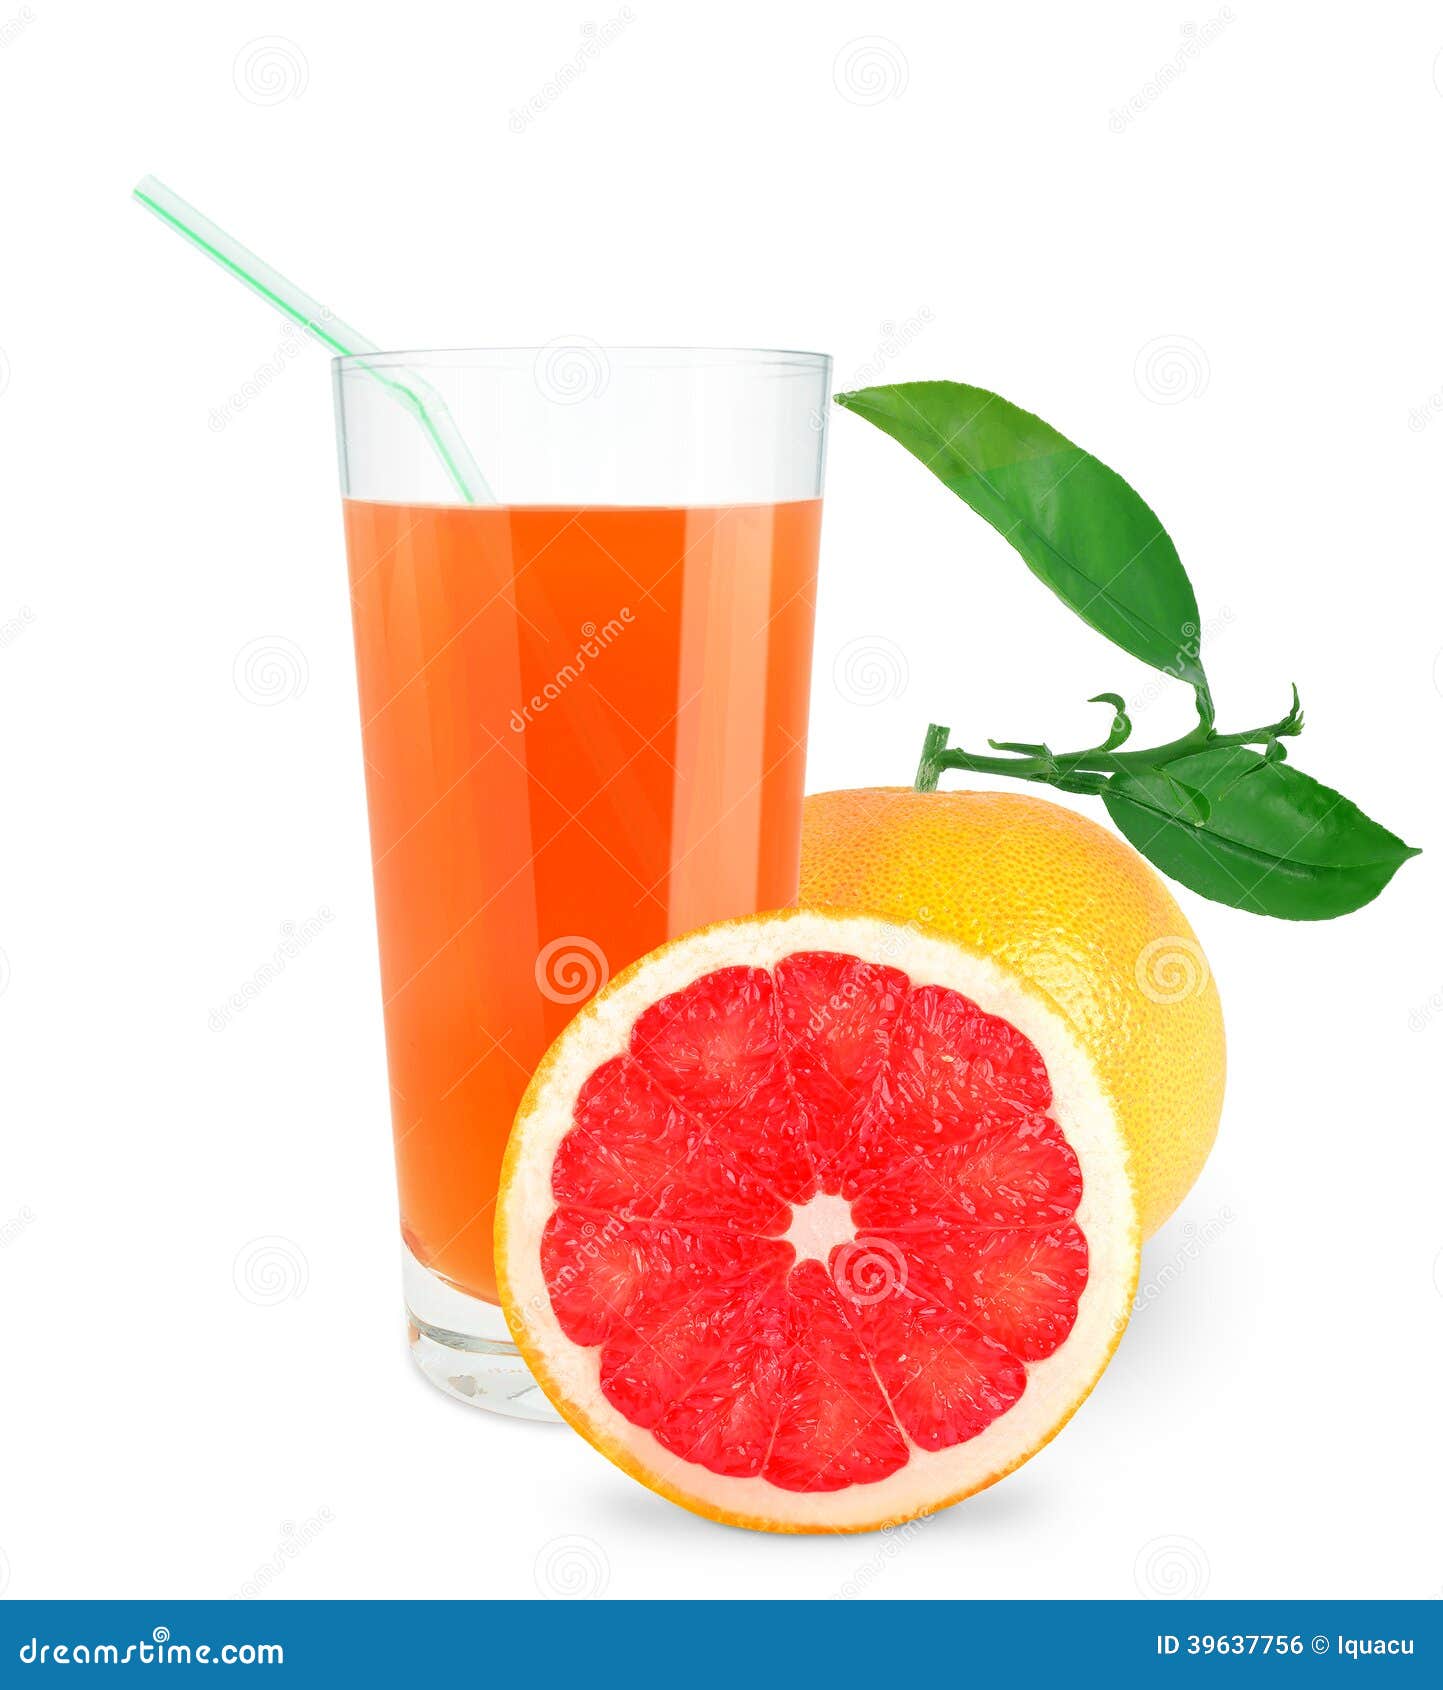 柚子汁图片大全-柚子汁高清图片下载-觅知网